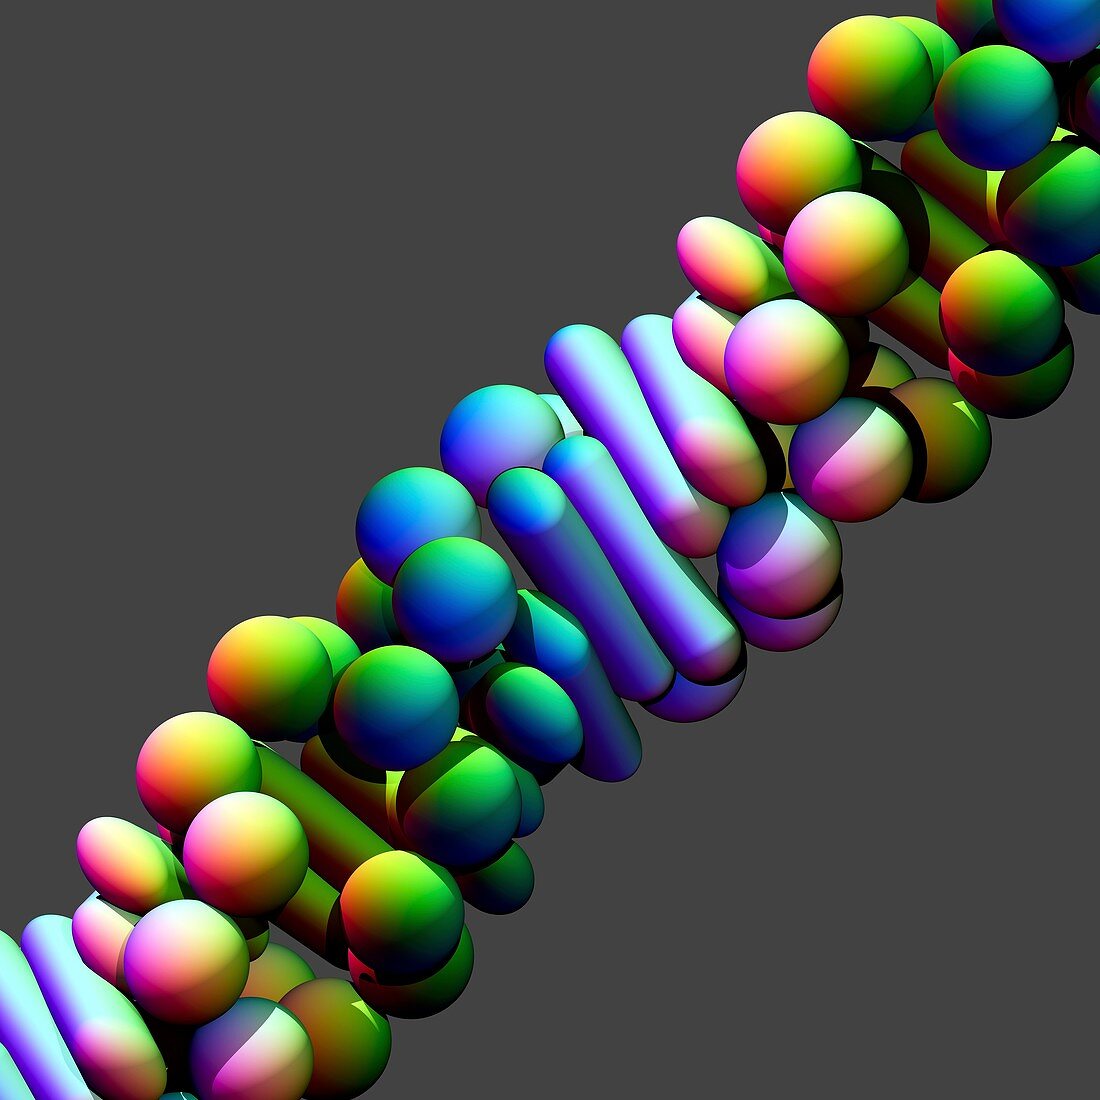 Z-DNA molecule,illustration